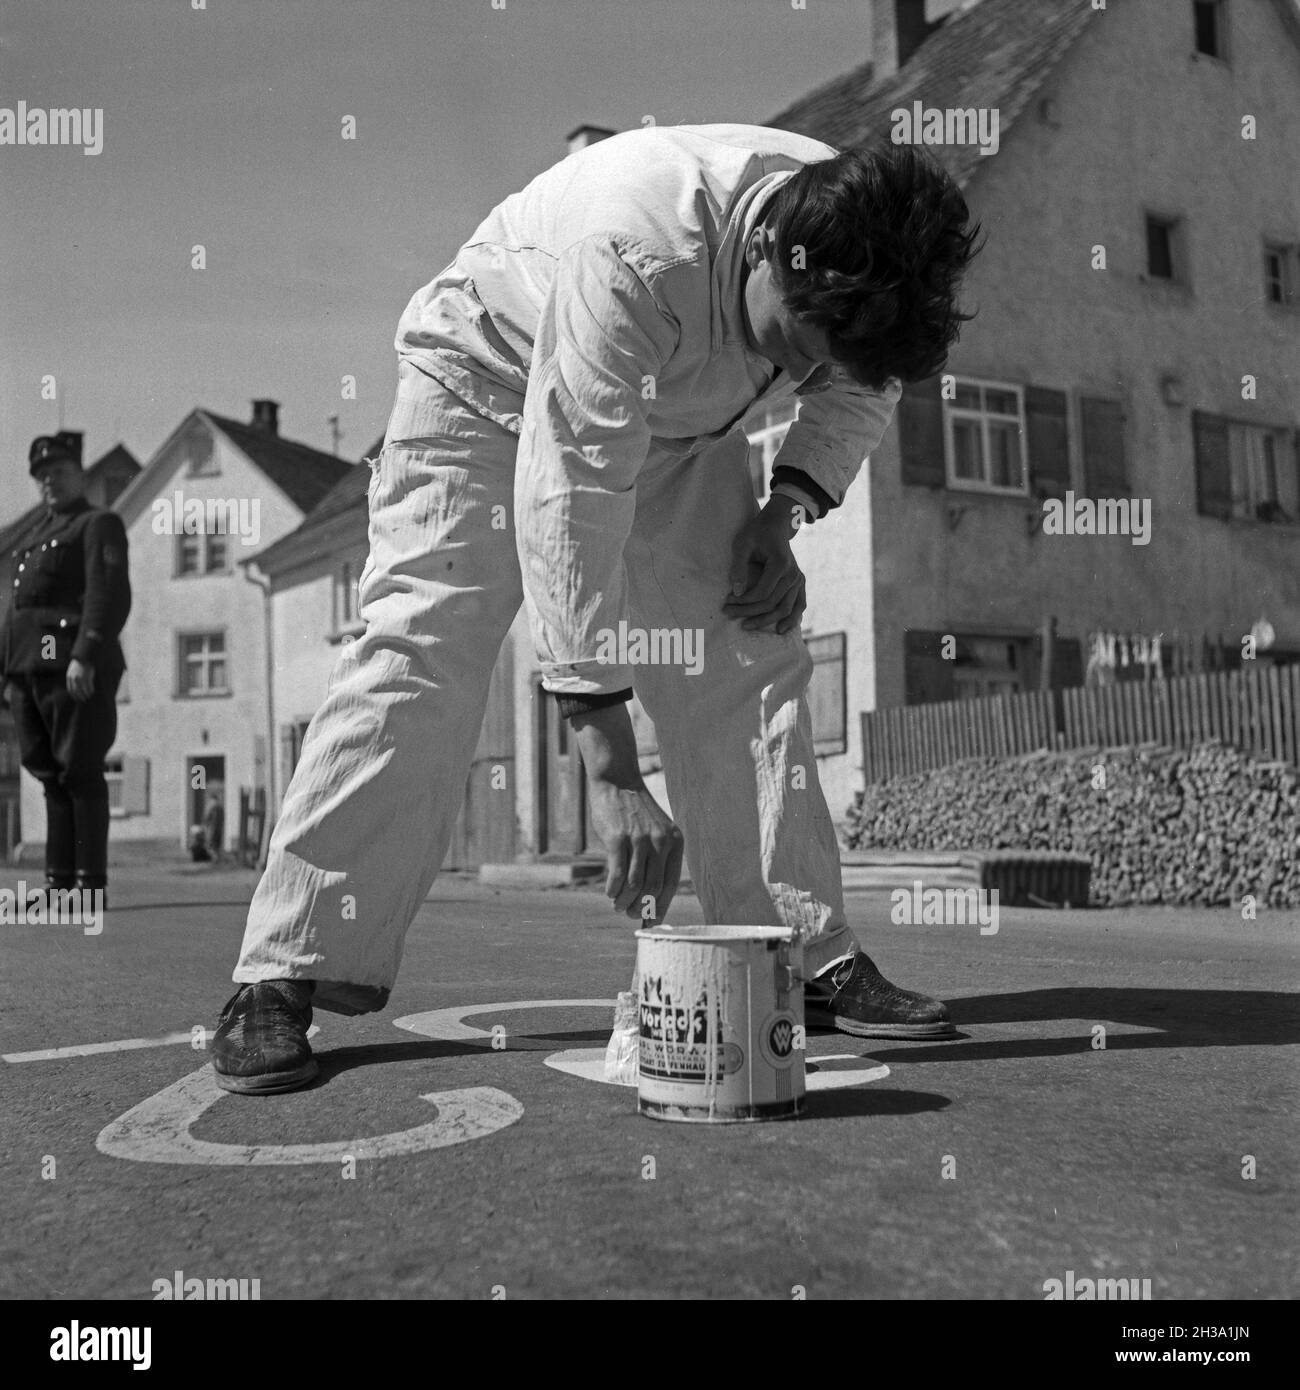 Ein Malermeister bei der Bezeichung von Parkplätzen auf der Straße, Deutschland 1950er Jahre. A painter marking parking areas on the street, Germany 1950s. Stock Photo